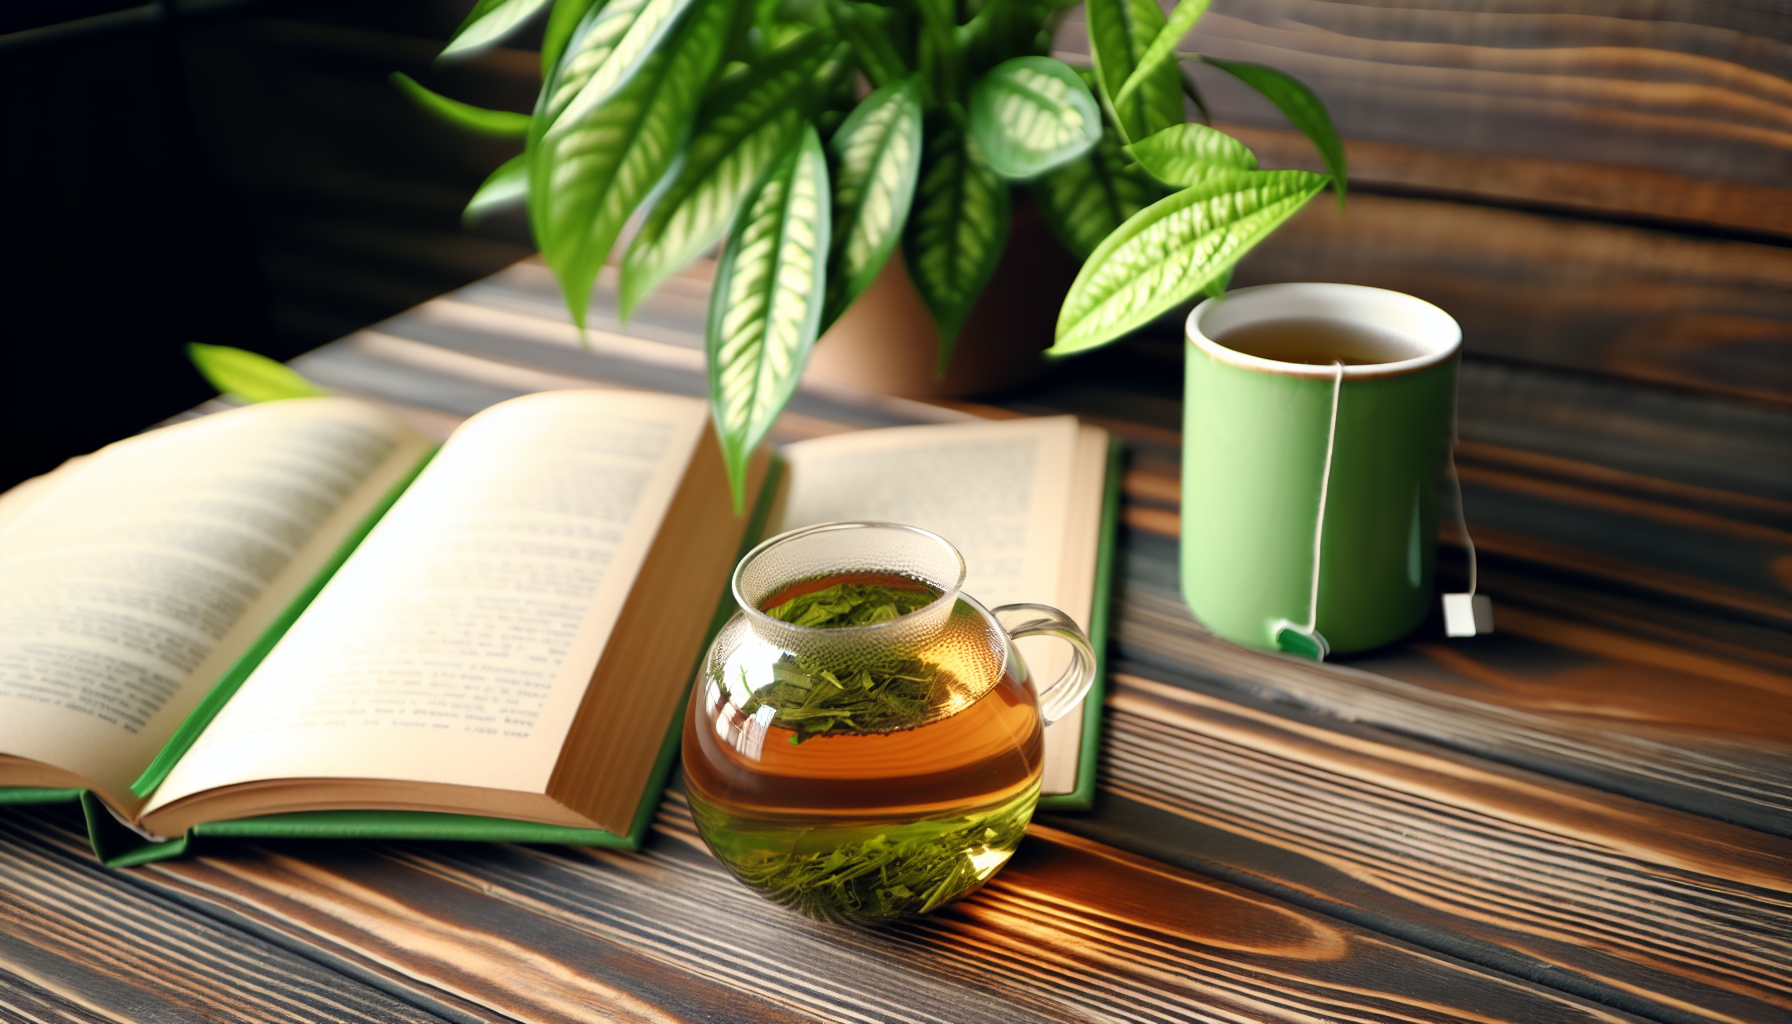 Taza de té verde con un libro y una planta, simbolizando relajación